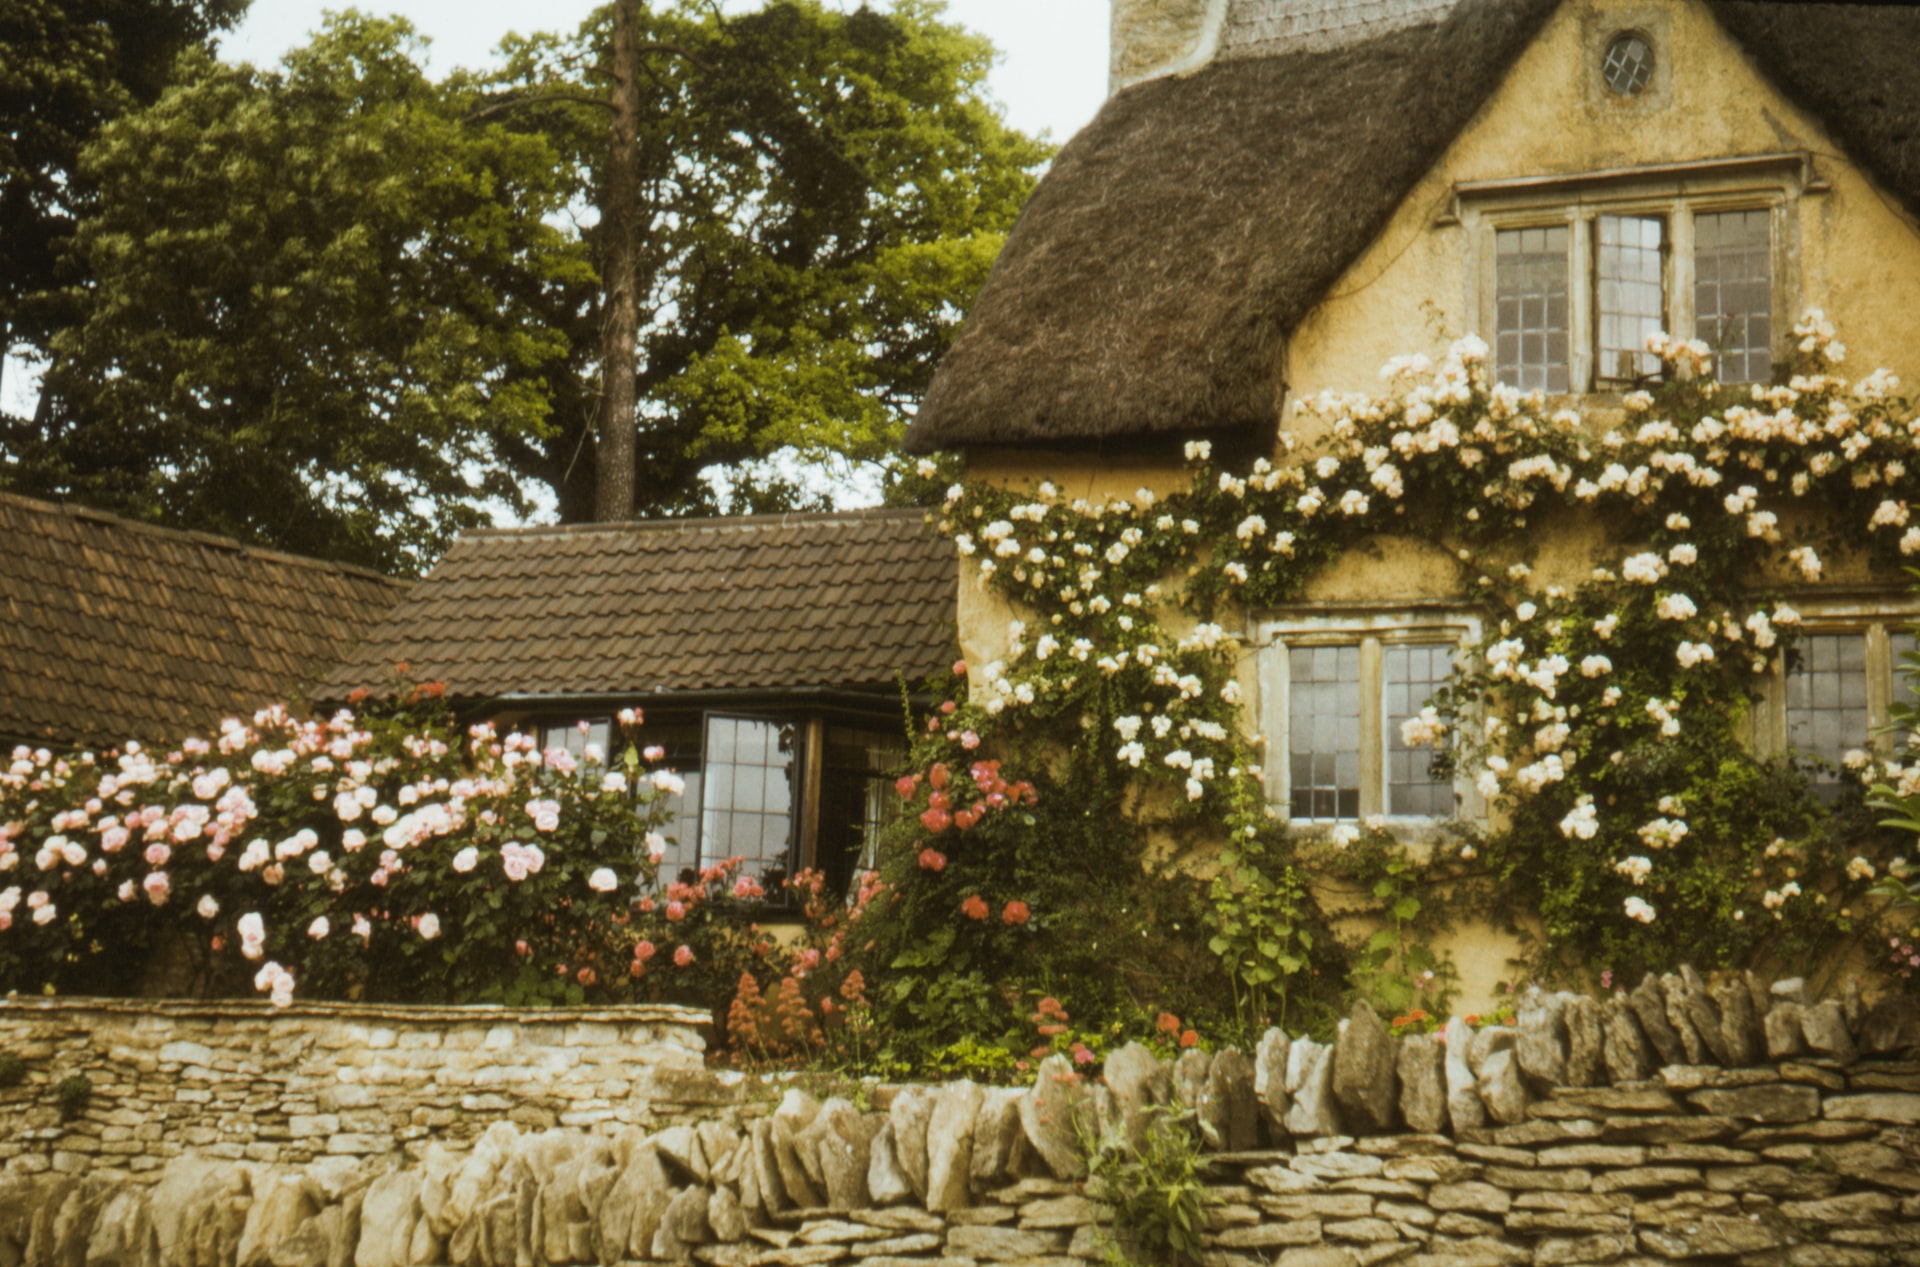 Reetdach-Cottage, überwuchert von Rosen und mit Kopfsteinpflaster im Vordergrund. Alles in desaturierten retro-Farben gehalten.